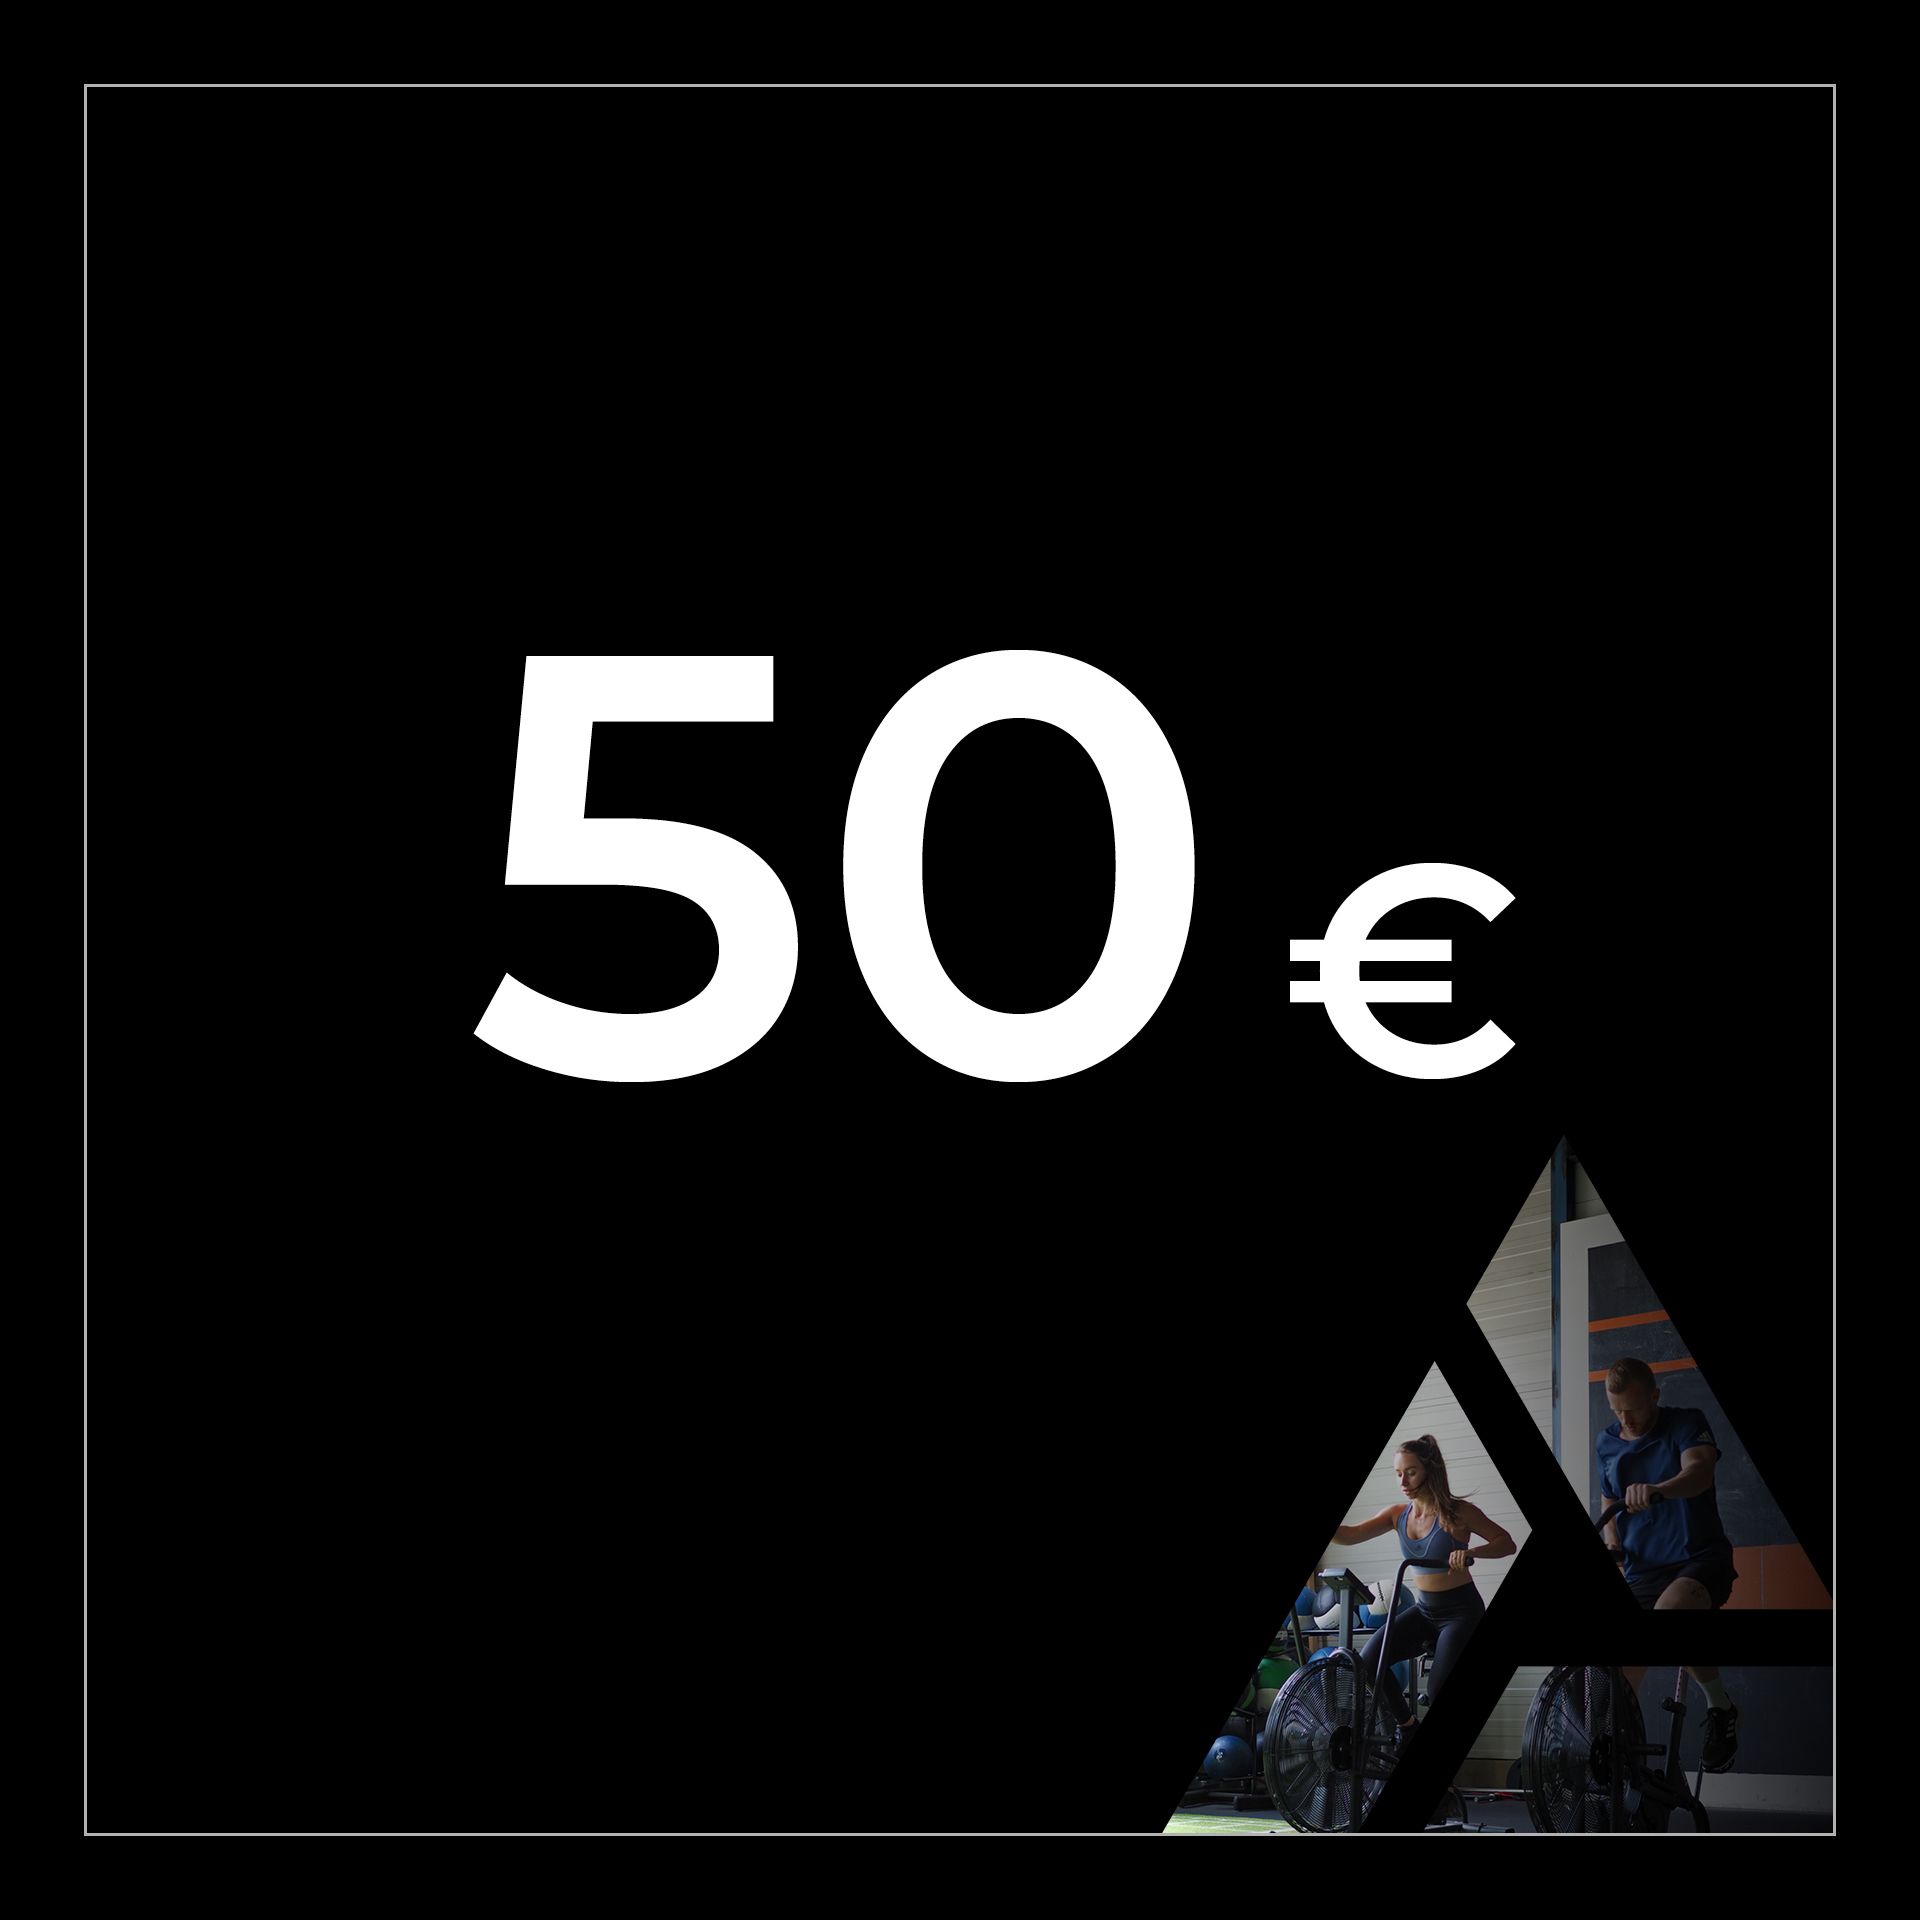 Geschenkgutschein 50 €